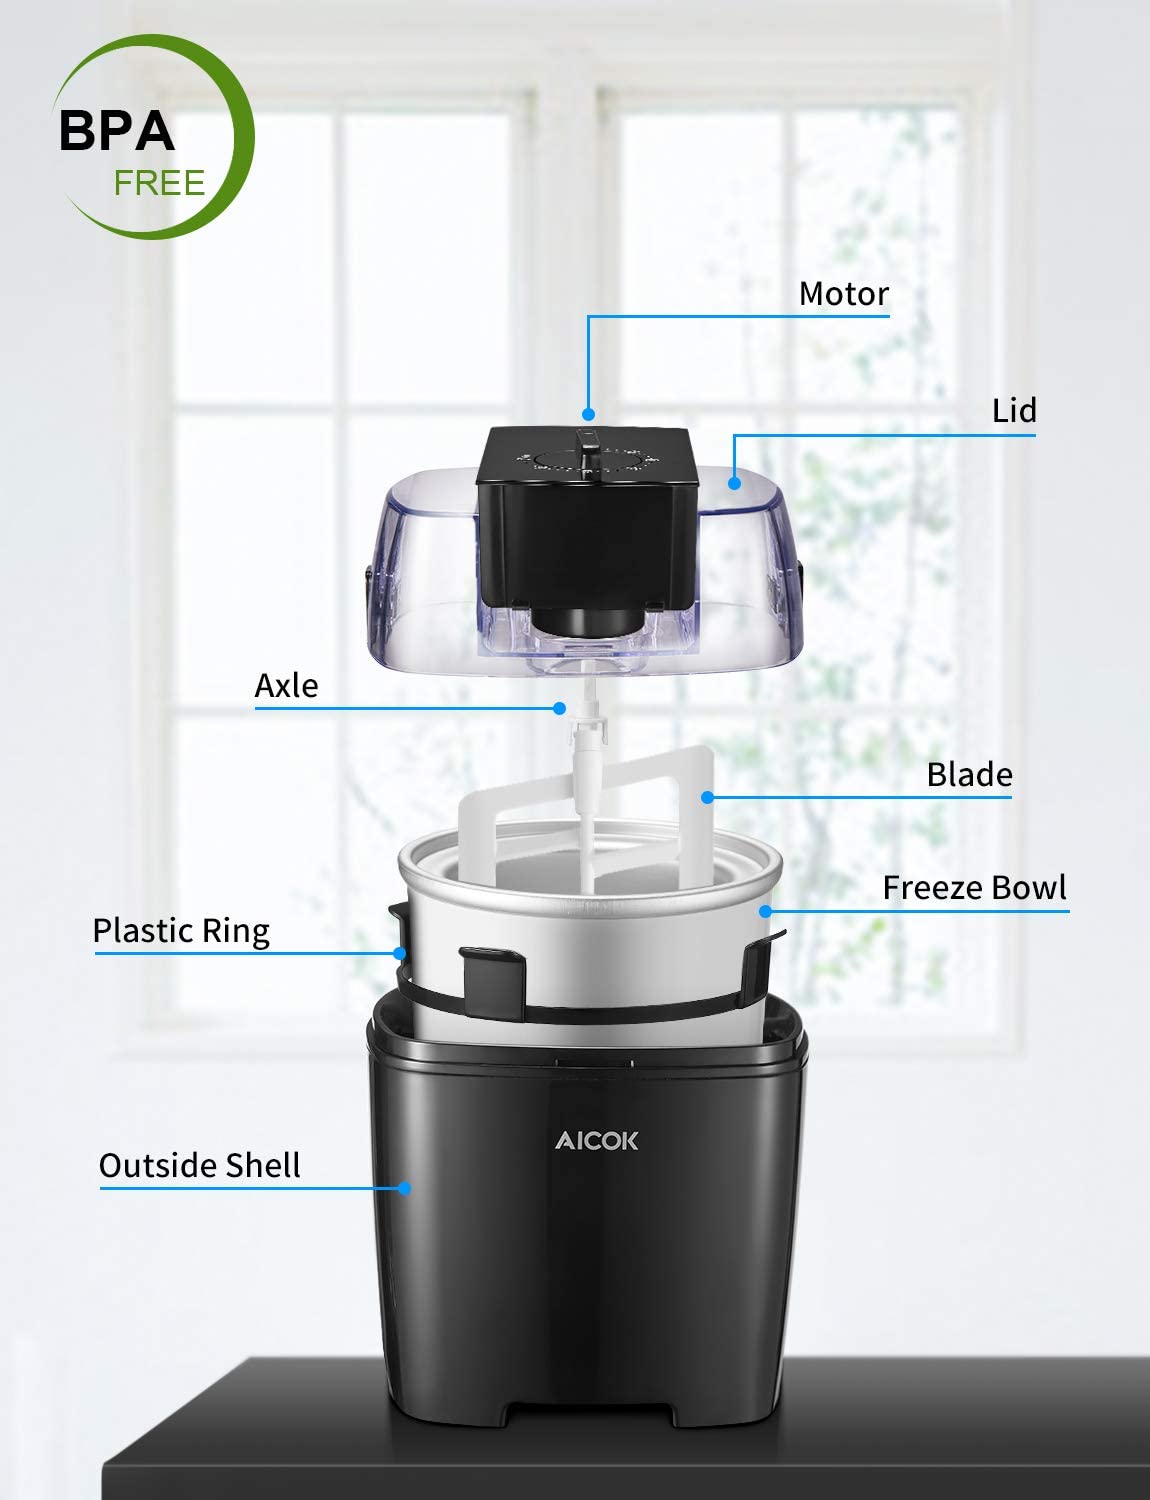 AICOK 1.5L Ice Cream Maker, Yogurt Function, Compact Ice Cream Machine